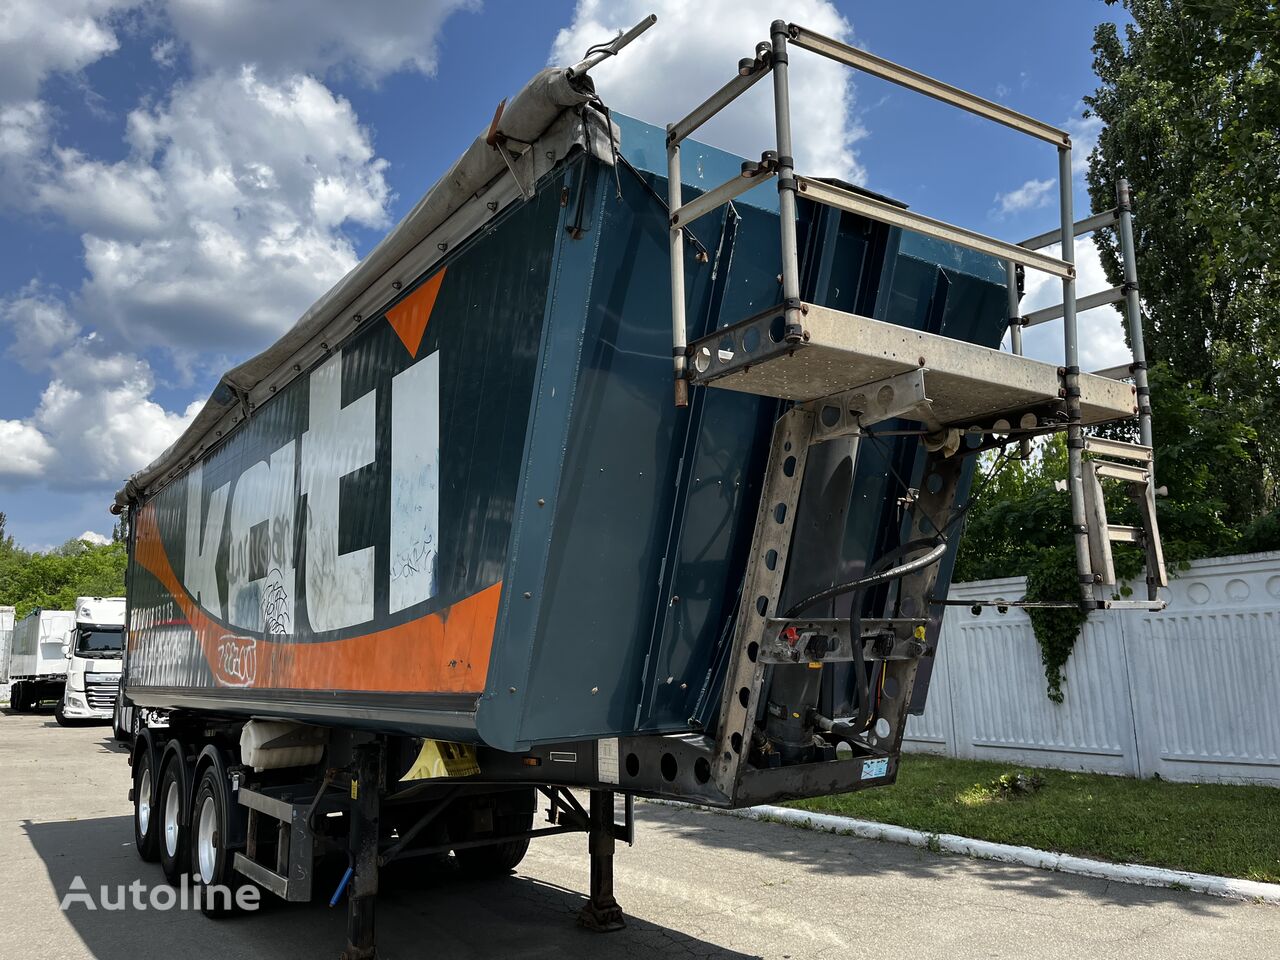 Schmitz Cargobull tipper semi-trailer